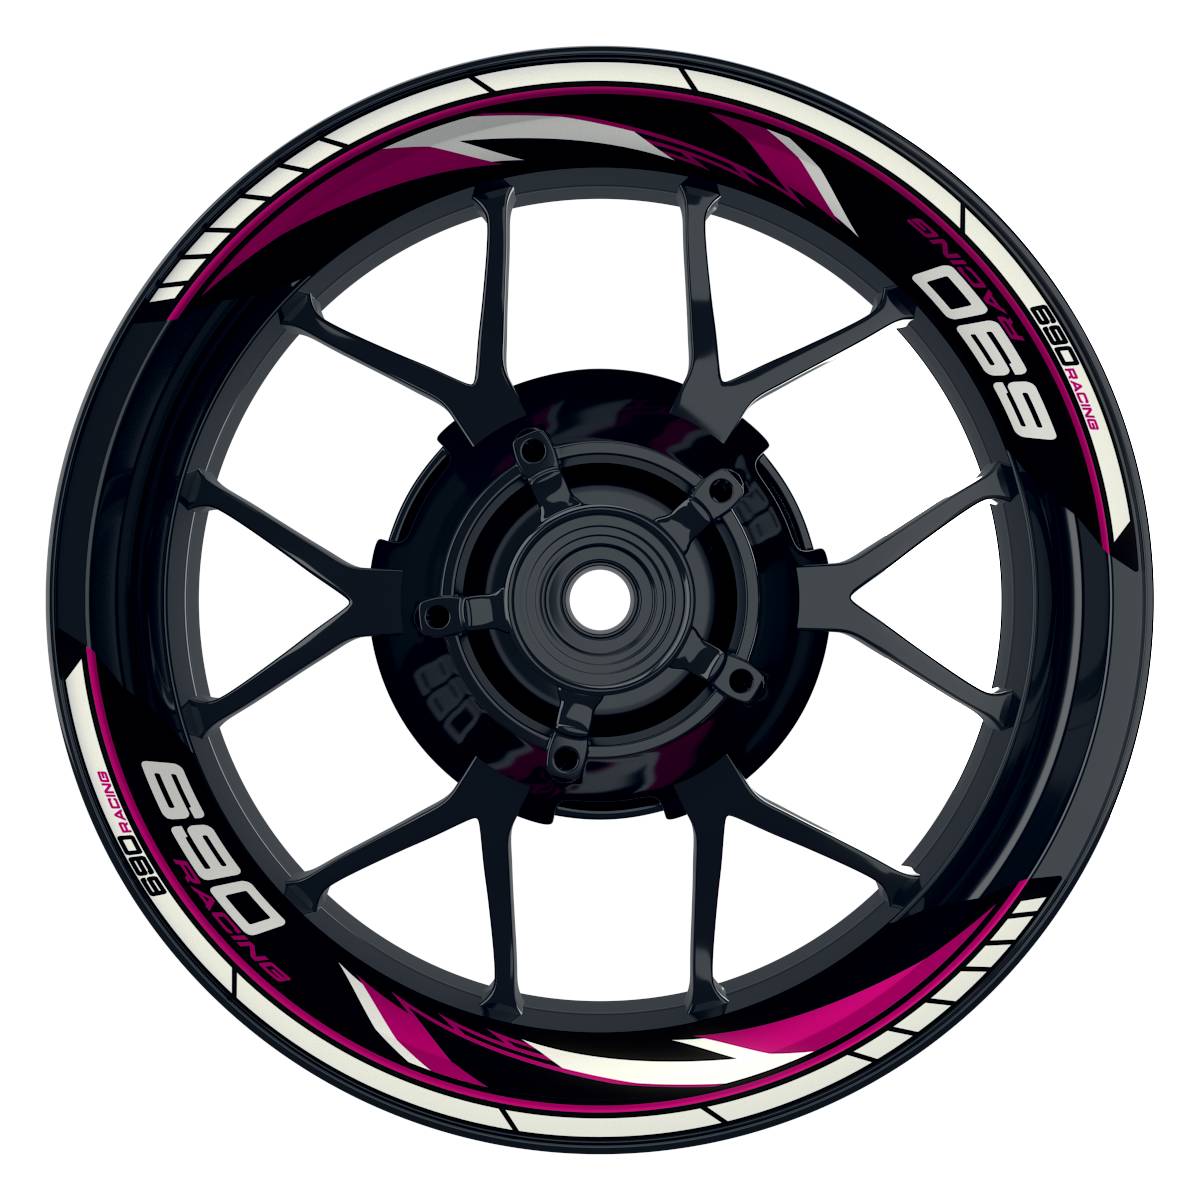 KTM Racing 690 Razor schwarz pink Frontansicht